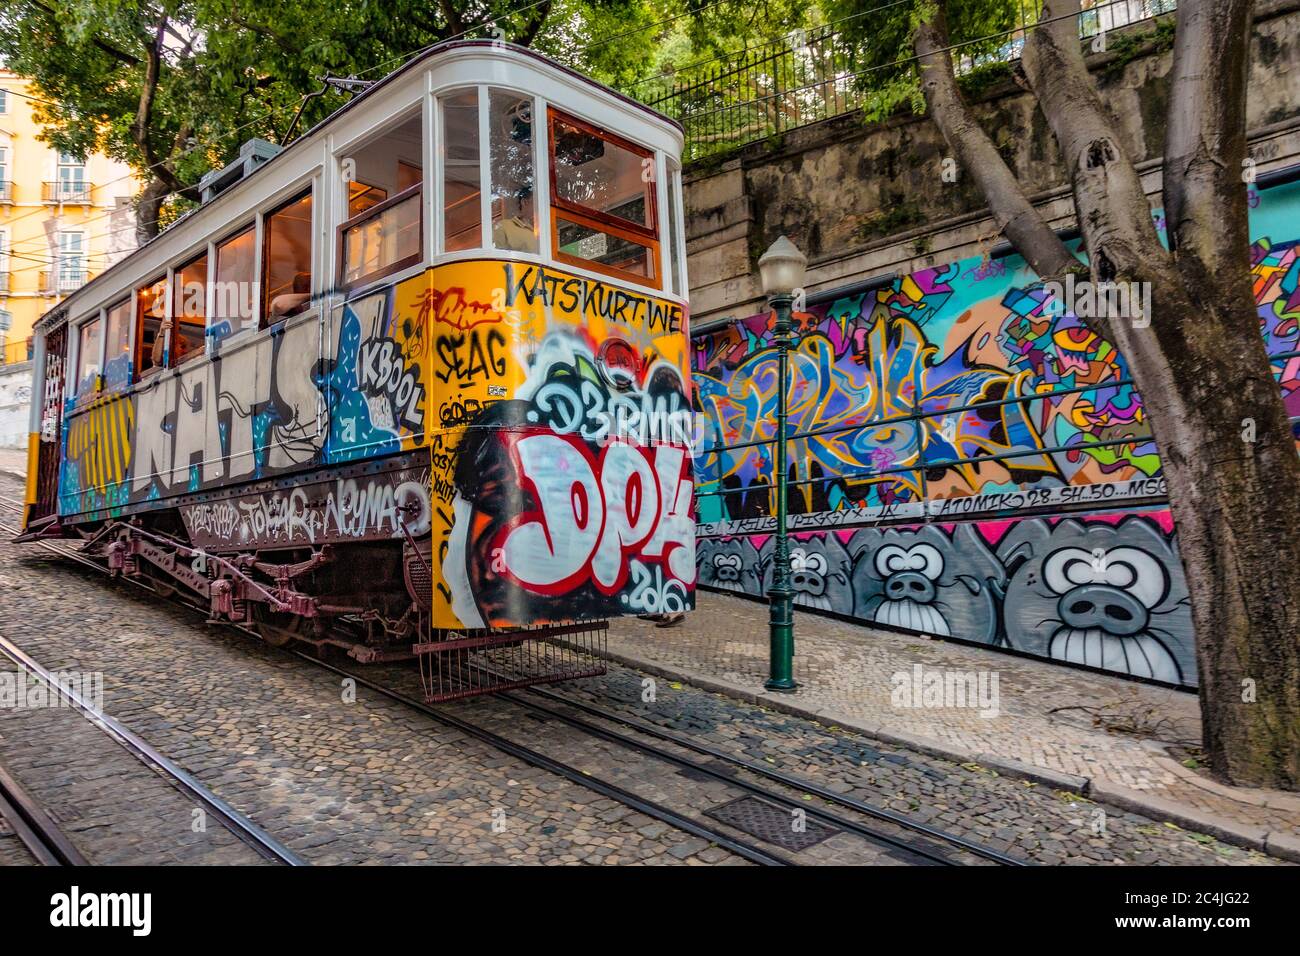 Portugal Lisbonne - les trams caractéristiques de Lisbonne font partie intégrante des transports en commun de la ville Banque D'Images